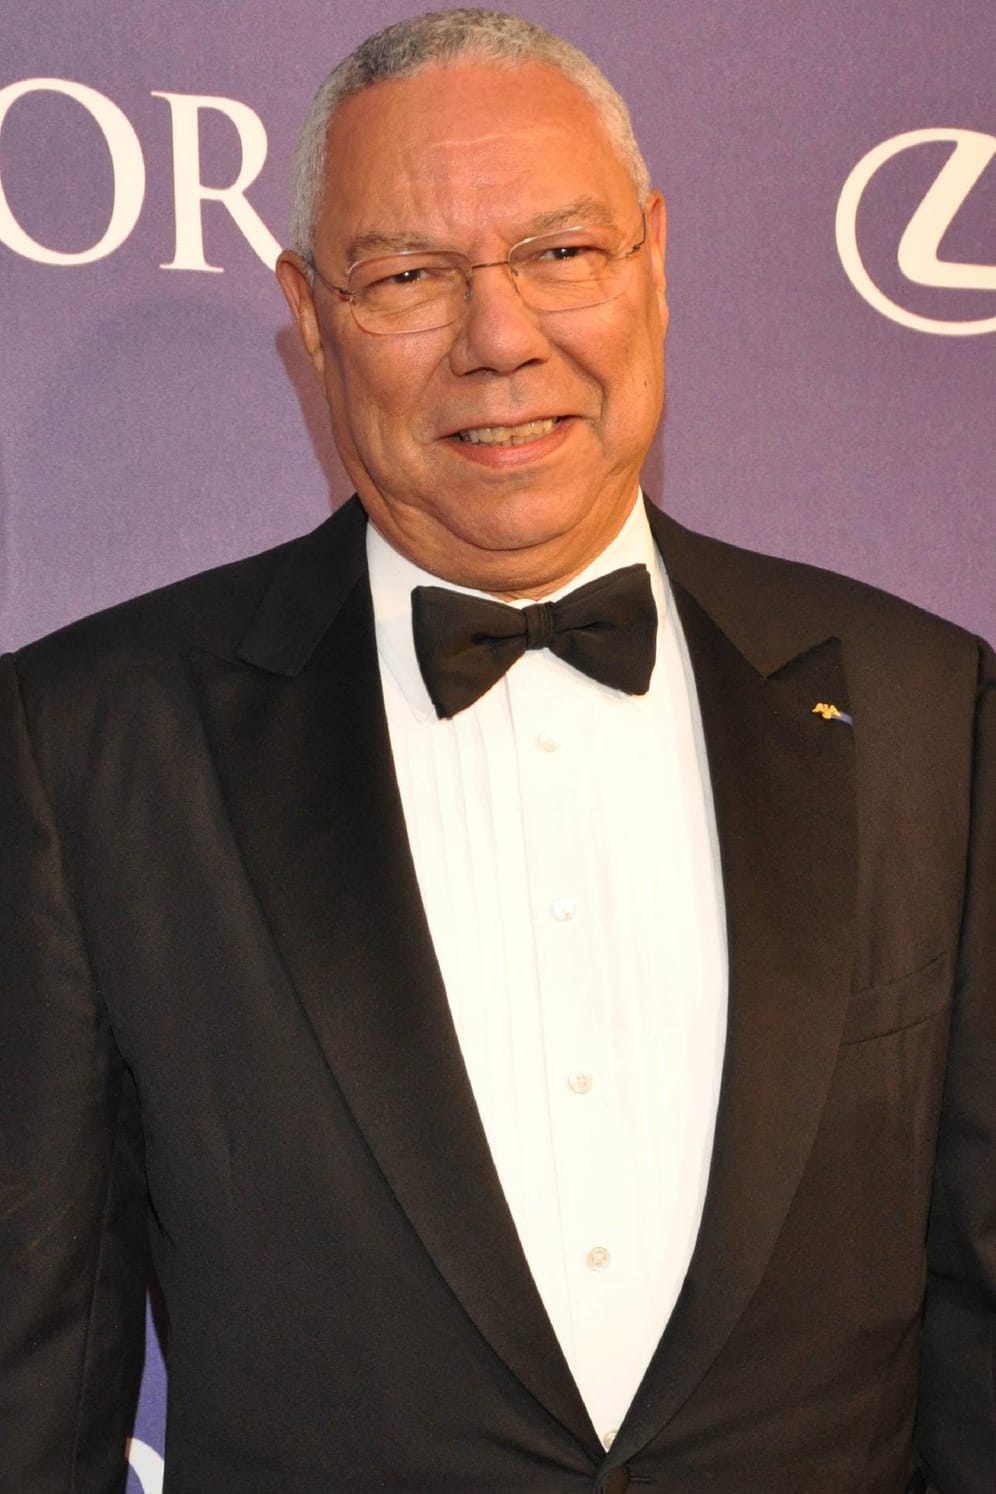 Colin Powell: Der Ex-US-Außenminister bekam mit 40 Jahren die Schockdiagnose Prostatakrebs. Er ließ sich die Prostata entfernen, um das Risiko einer erneuten Erkrankung auszuschließen.